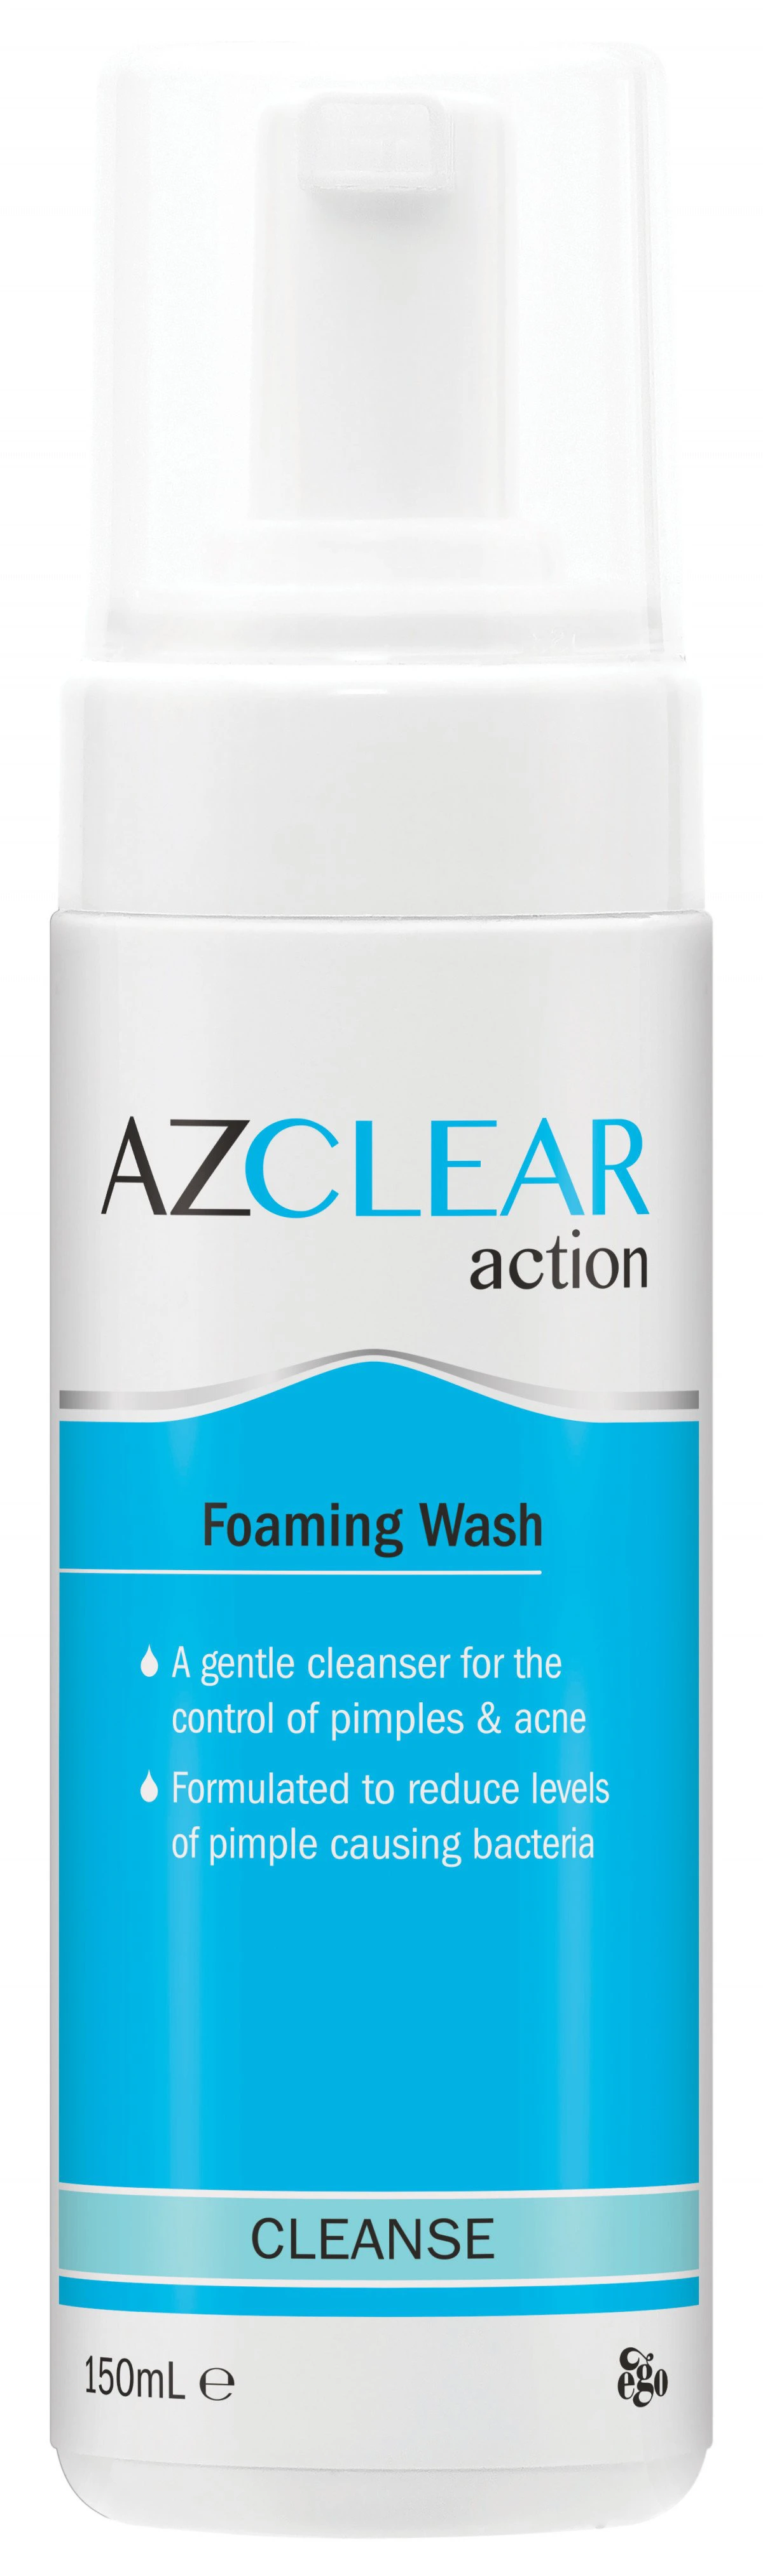 az clear foaming wash